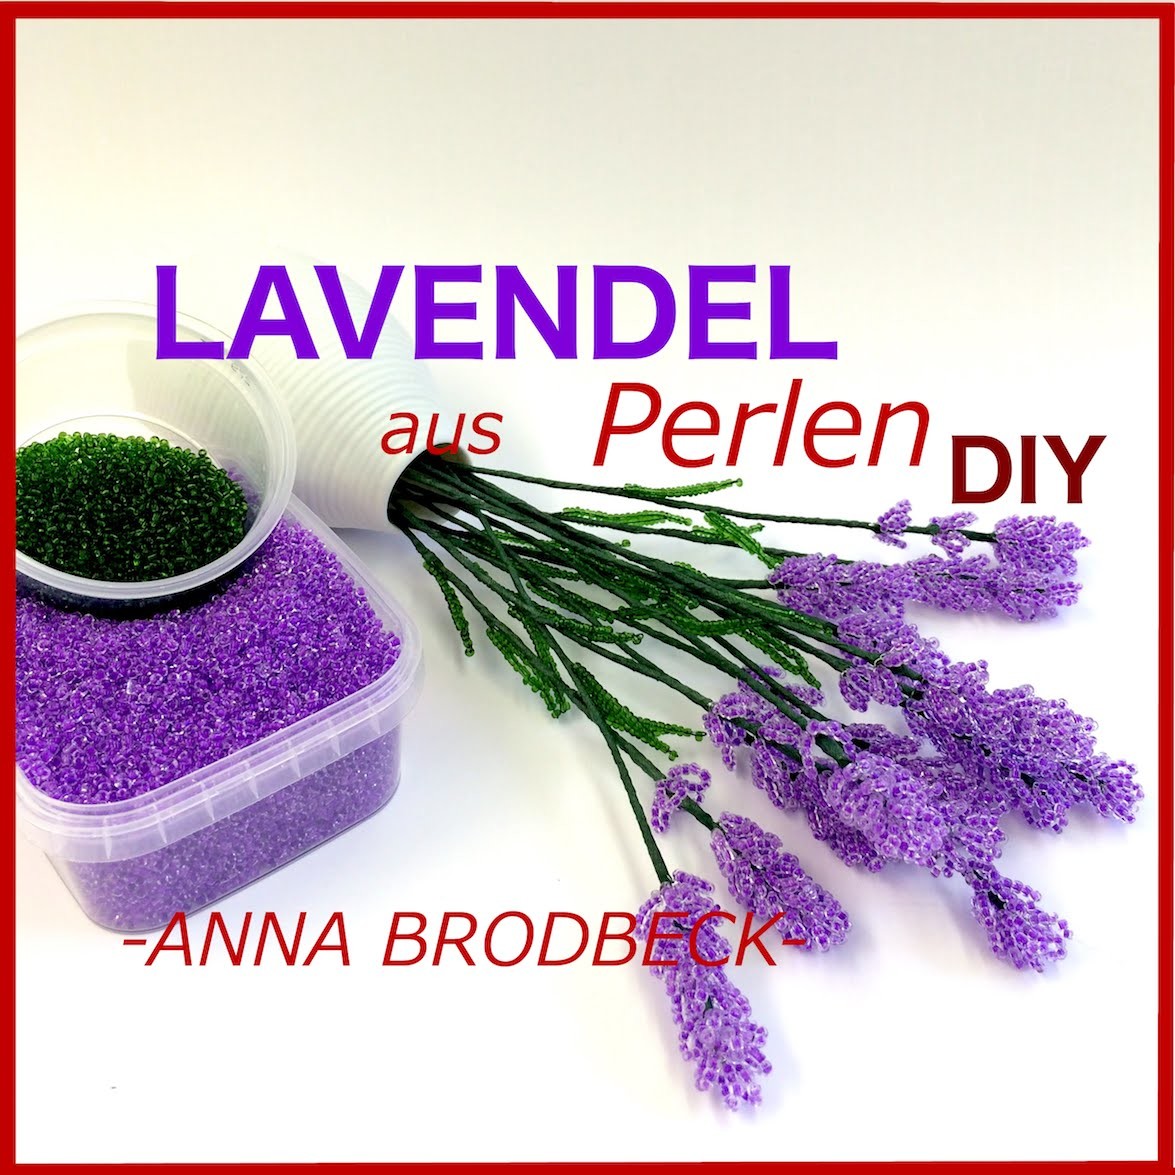 LAVENDEL aus Perlen. Annonce DIY (DVD1)